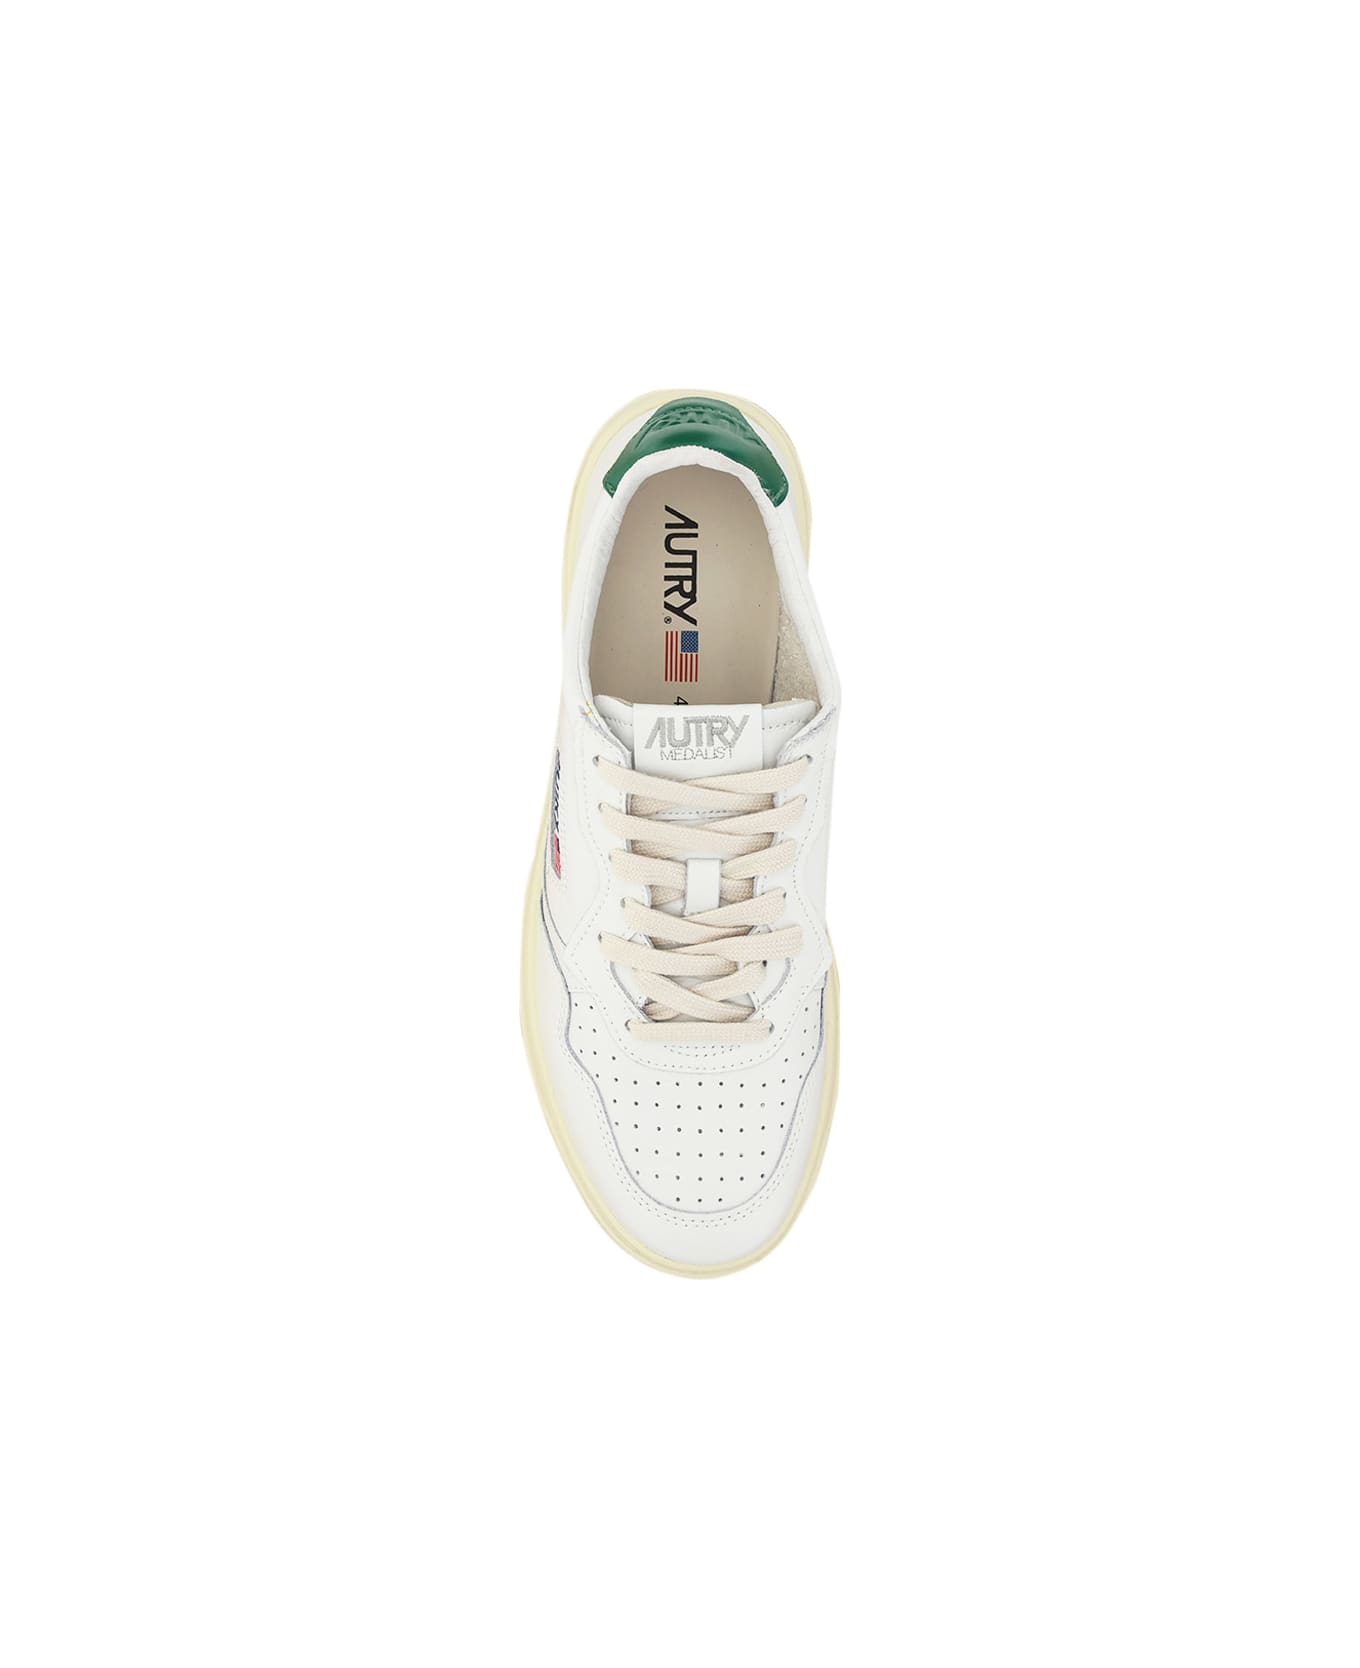 Autry Low 01 Sneakers - Bianco/Verde